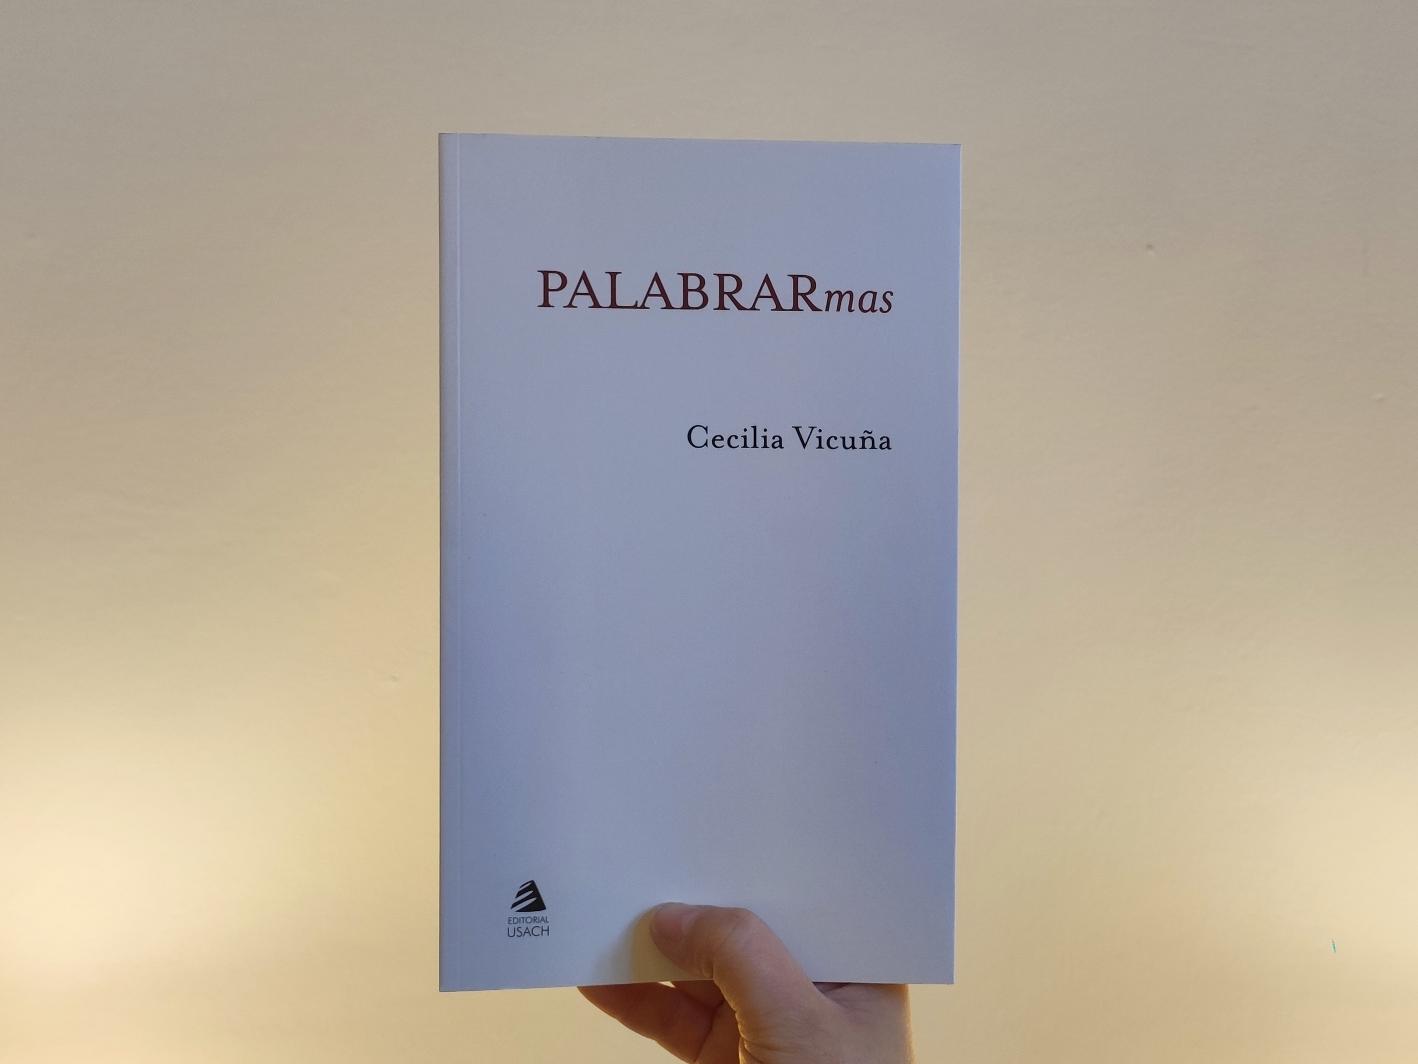 Fotografía de una libro con cubierta blanca y el título Palabrarmas